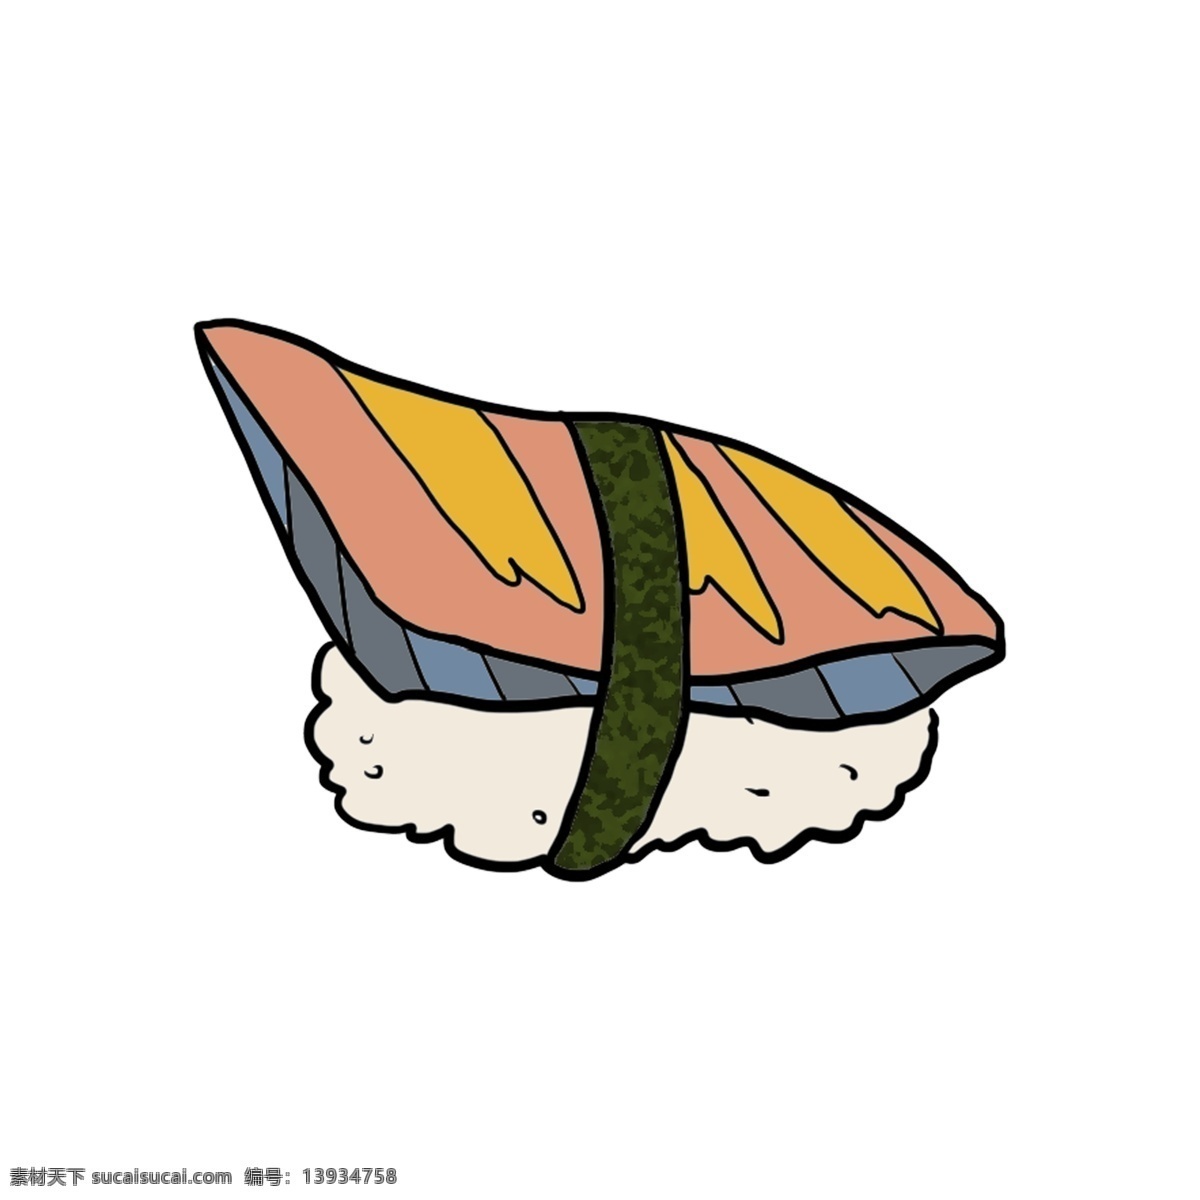 卡通 海苔 寿司 插画 海苔寿司 食物 小吃 肉松 卡通寿司 海苔寿司插画 美食 绿色寿司